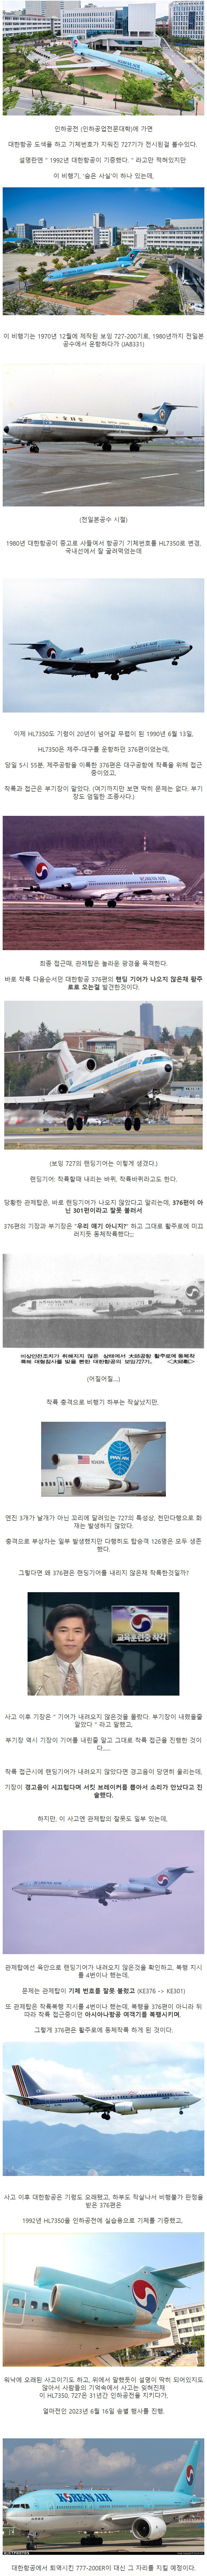 인하공전에 전시된 대한항공 727의 비밀